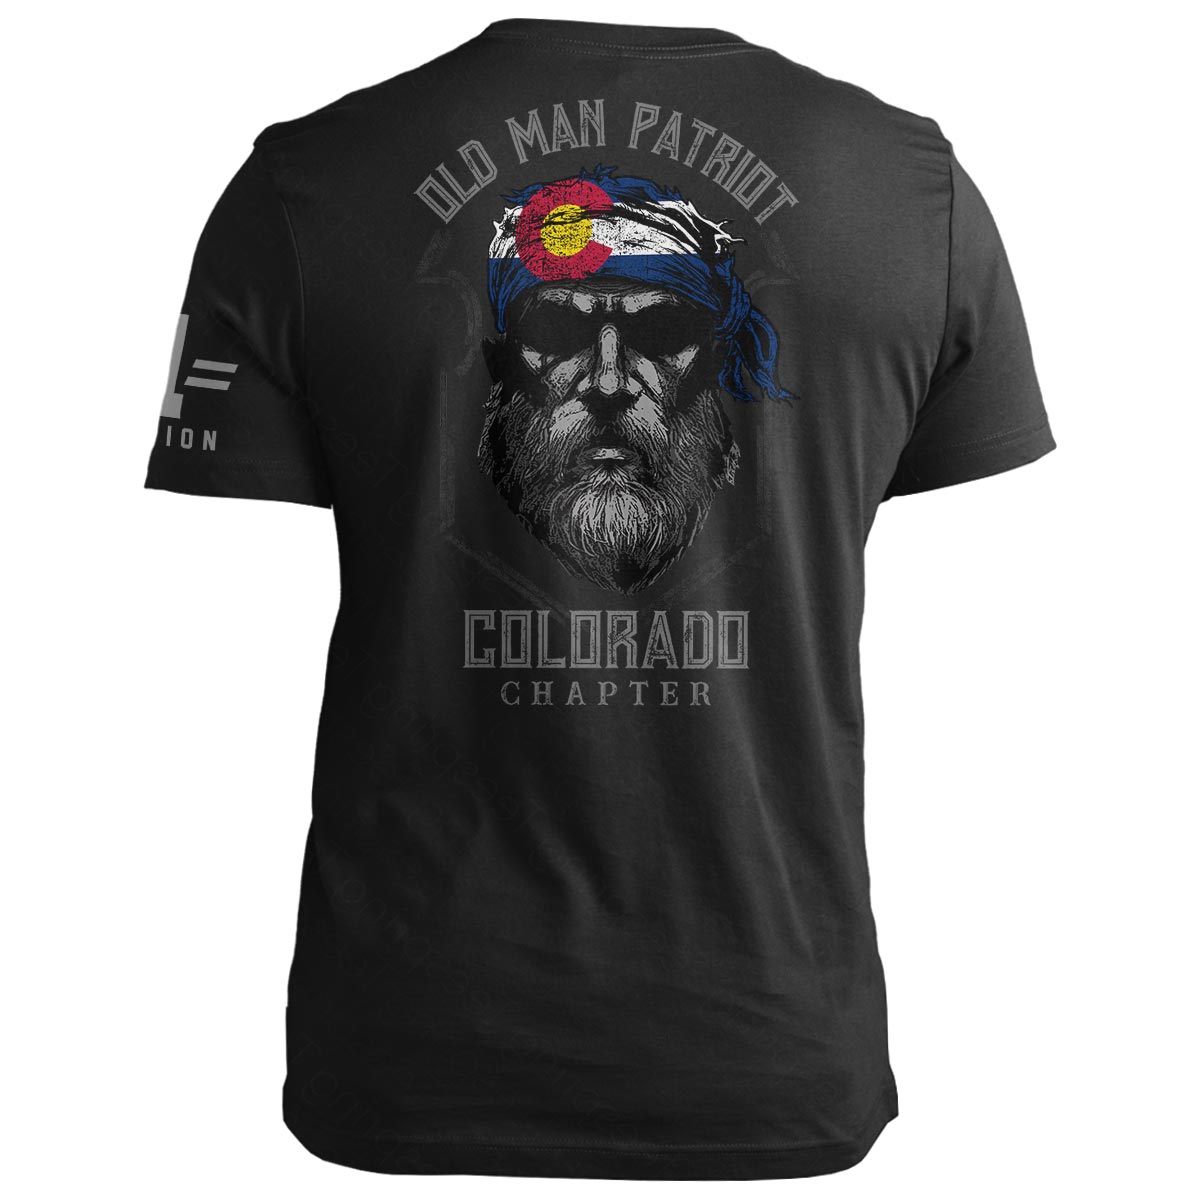 Colorado Old Man Patriot